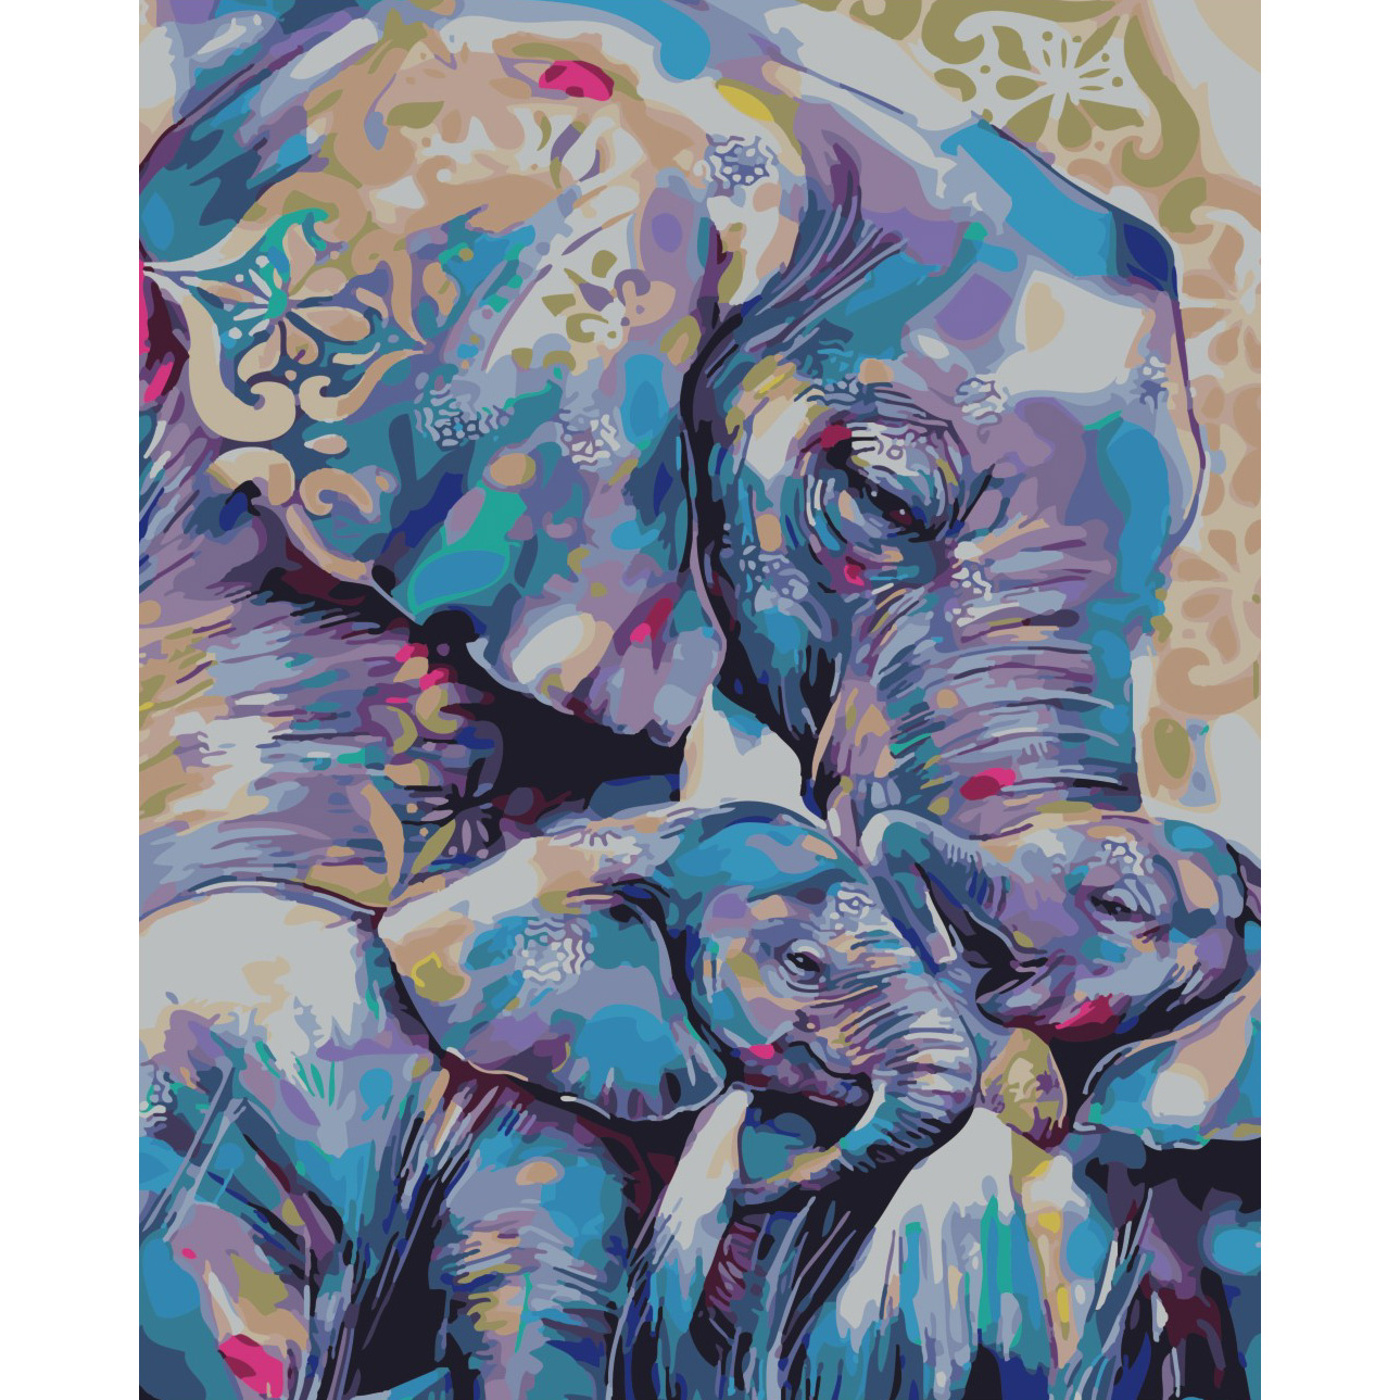 Malen nach Zahlen Strateg Mutter mit Elefantenbabys auf farbigem Hintergrund, Größe 40x50 cm (SY6519)